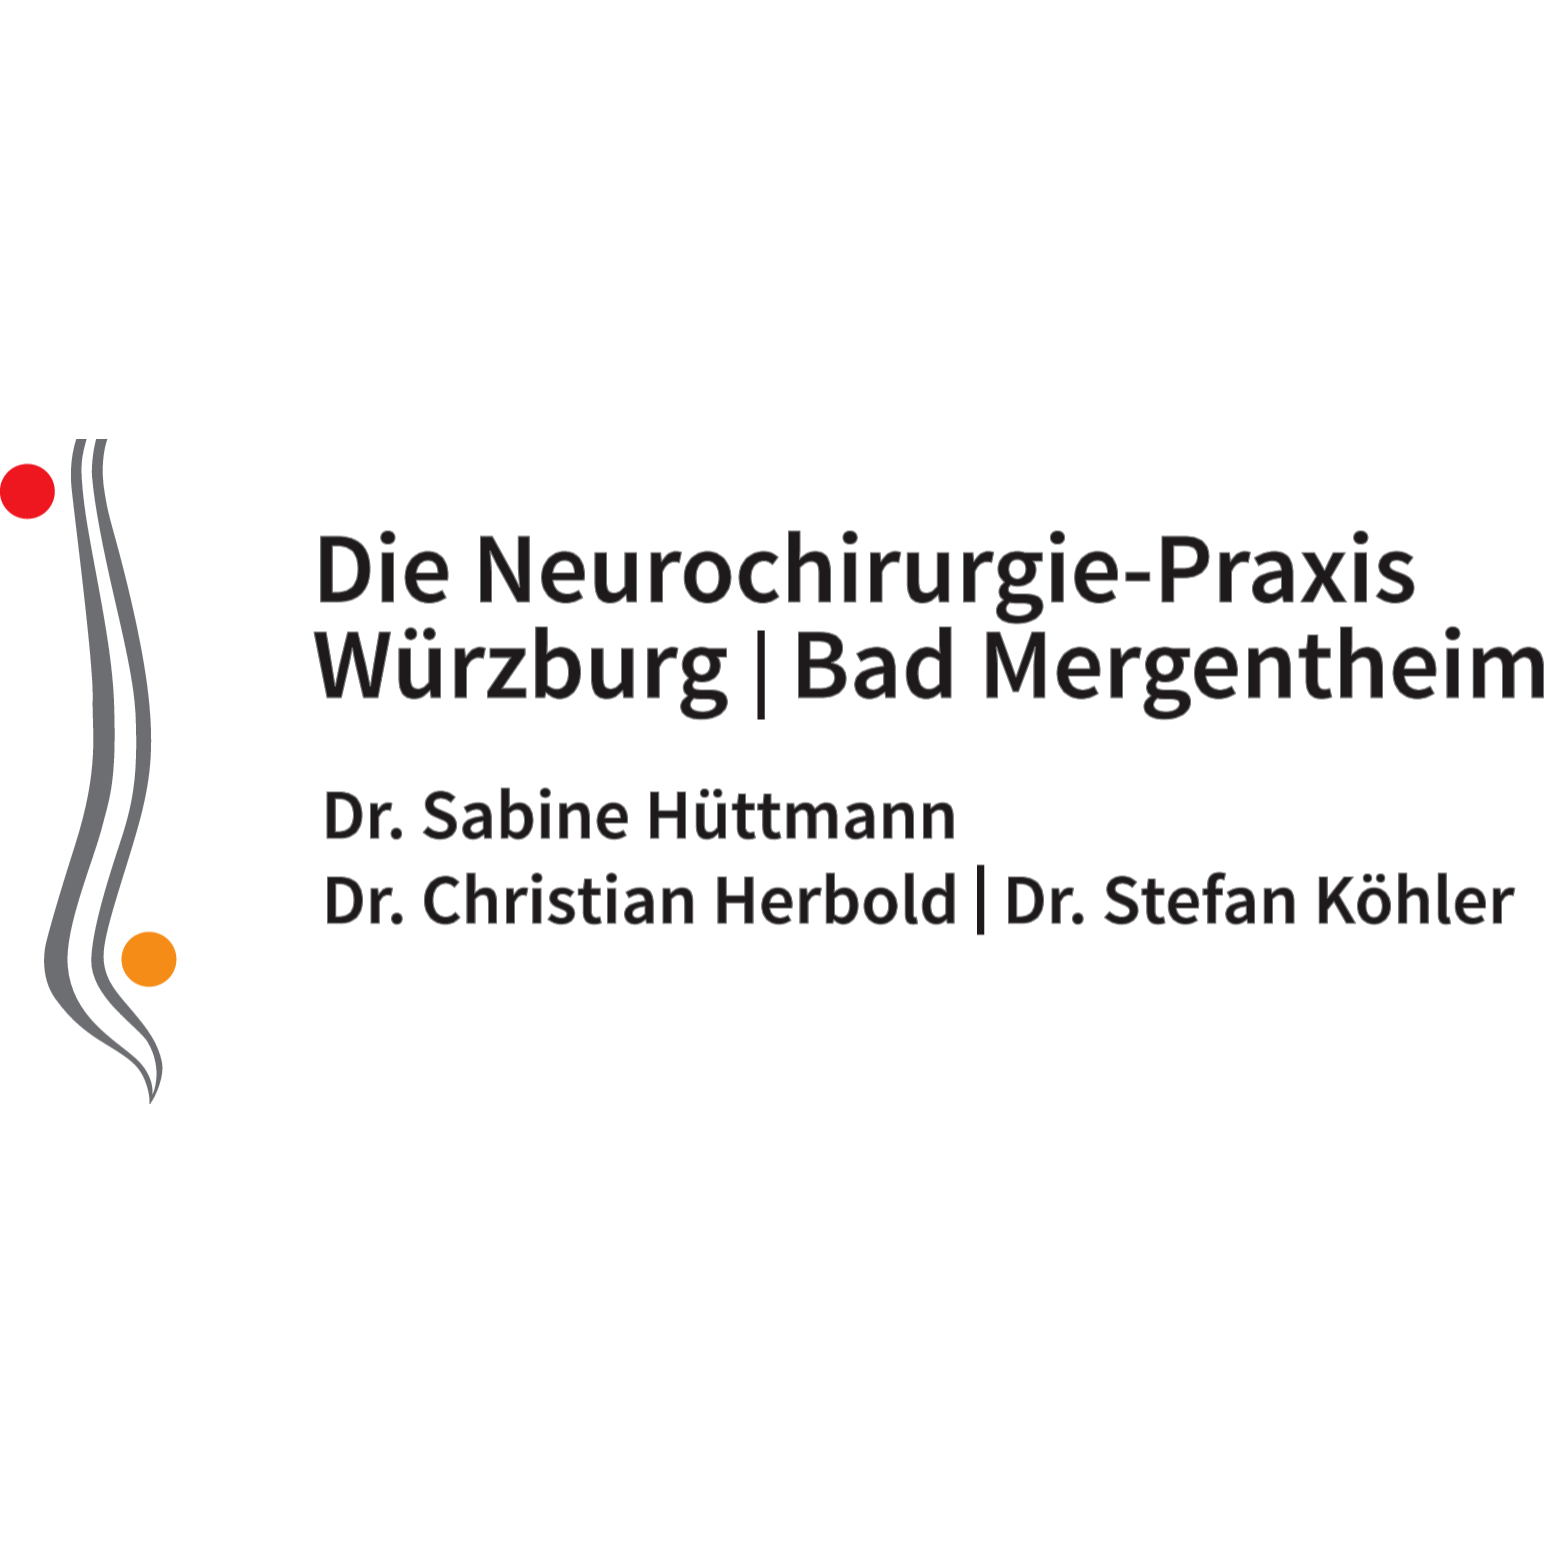 Die Neurochirurgie - Praxis Würzburg | Bad Mergentheim Logo